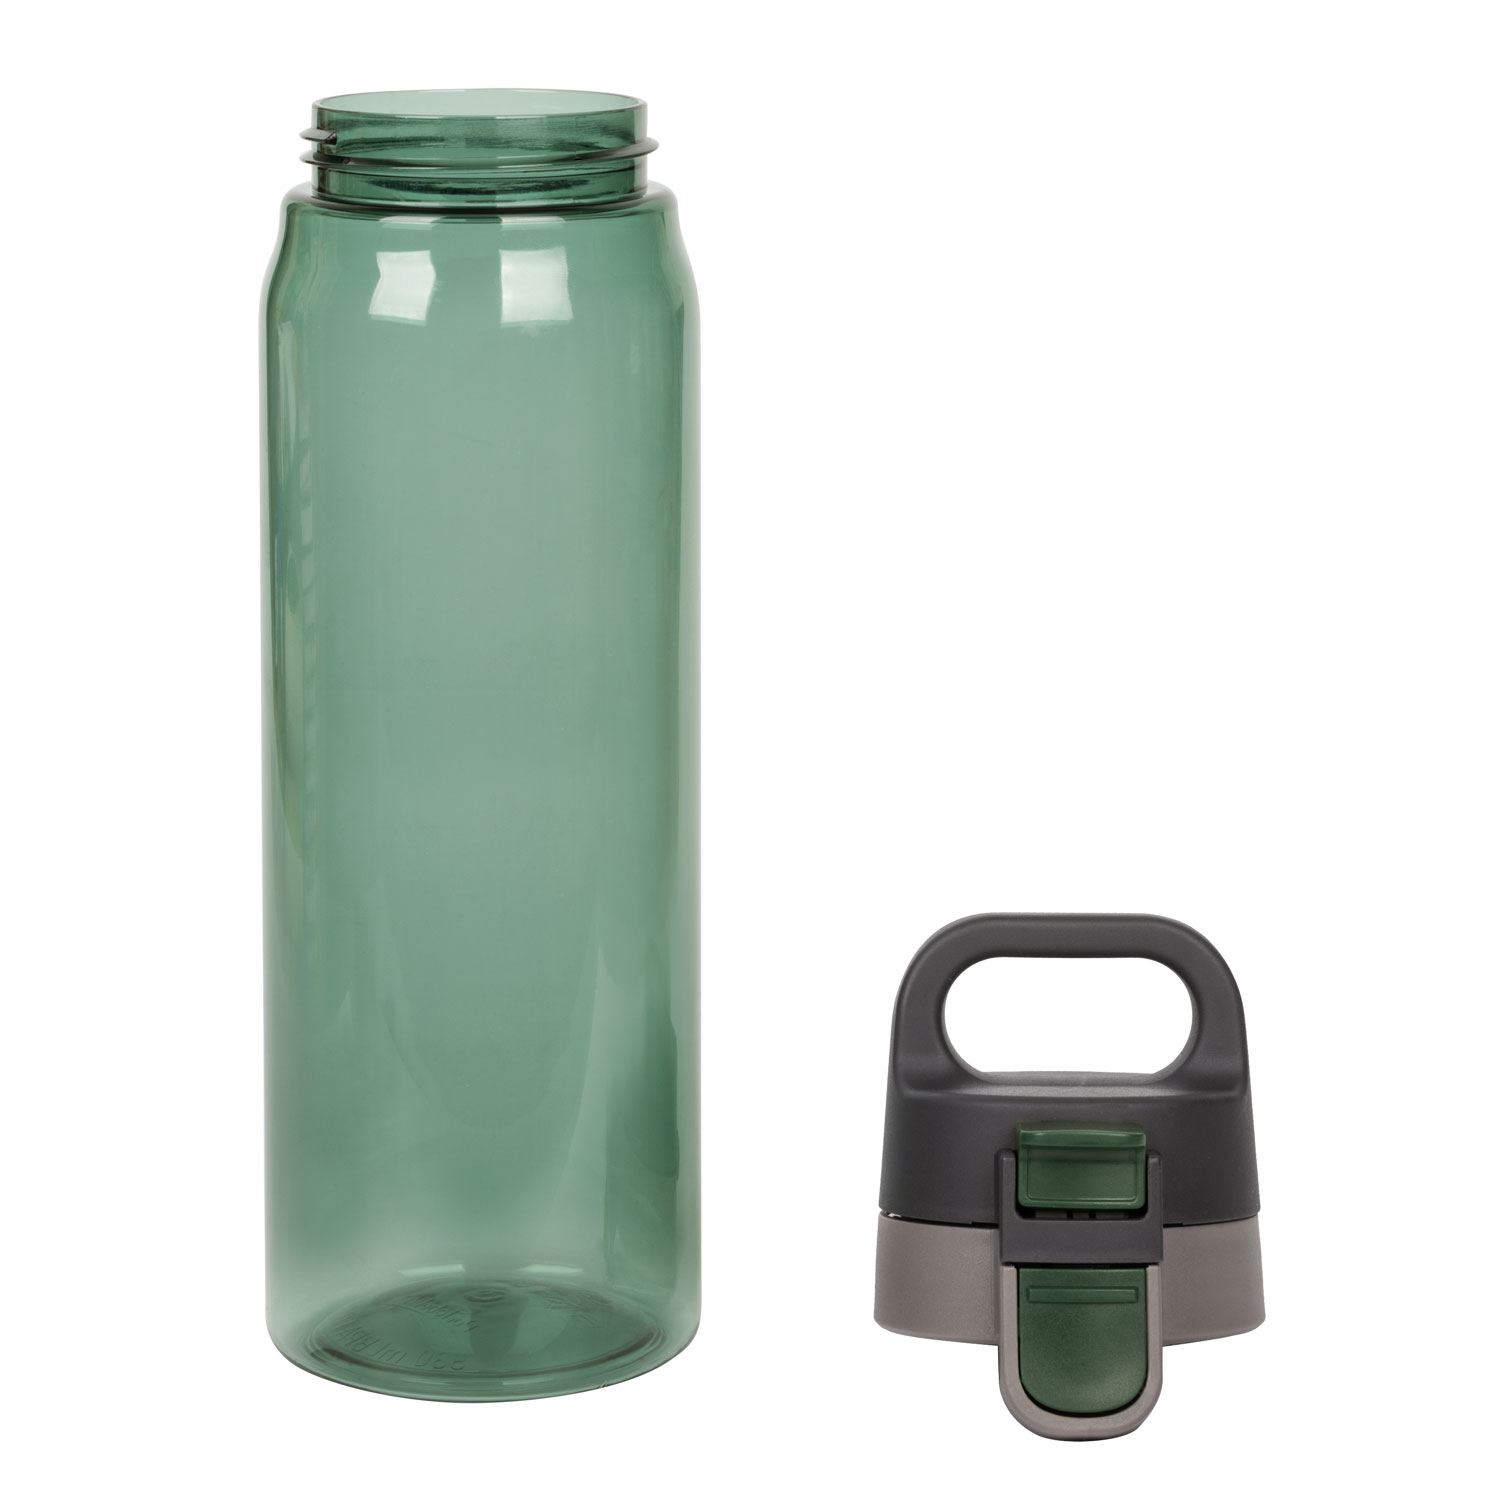 Аква зеленая. Фляга св-1573 700ml, зеленый. Спортивная бутылка для воды. Бутылка воды Aqua. Спортивная бутылка для воды, Aqua.